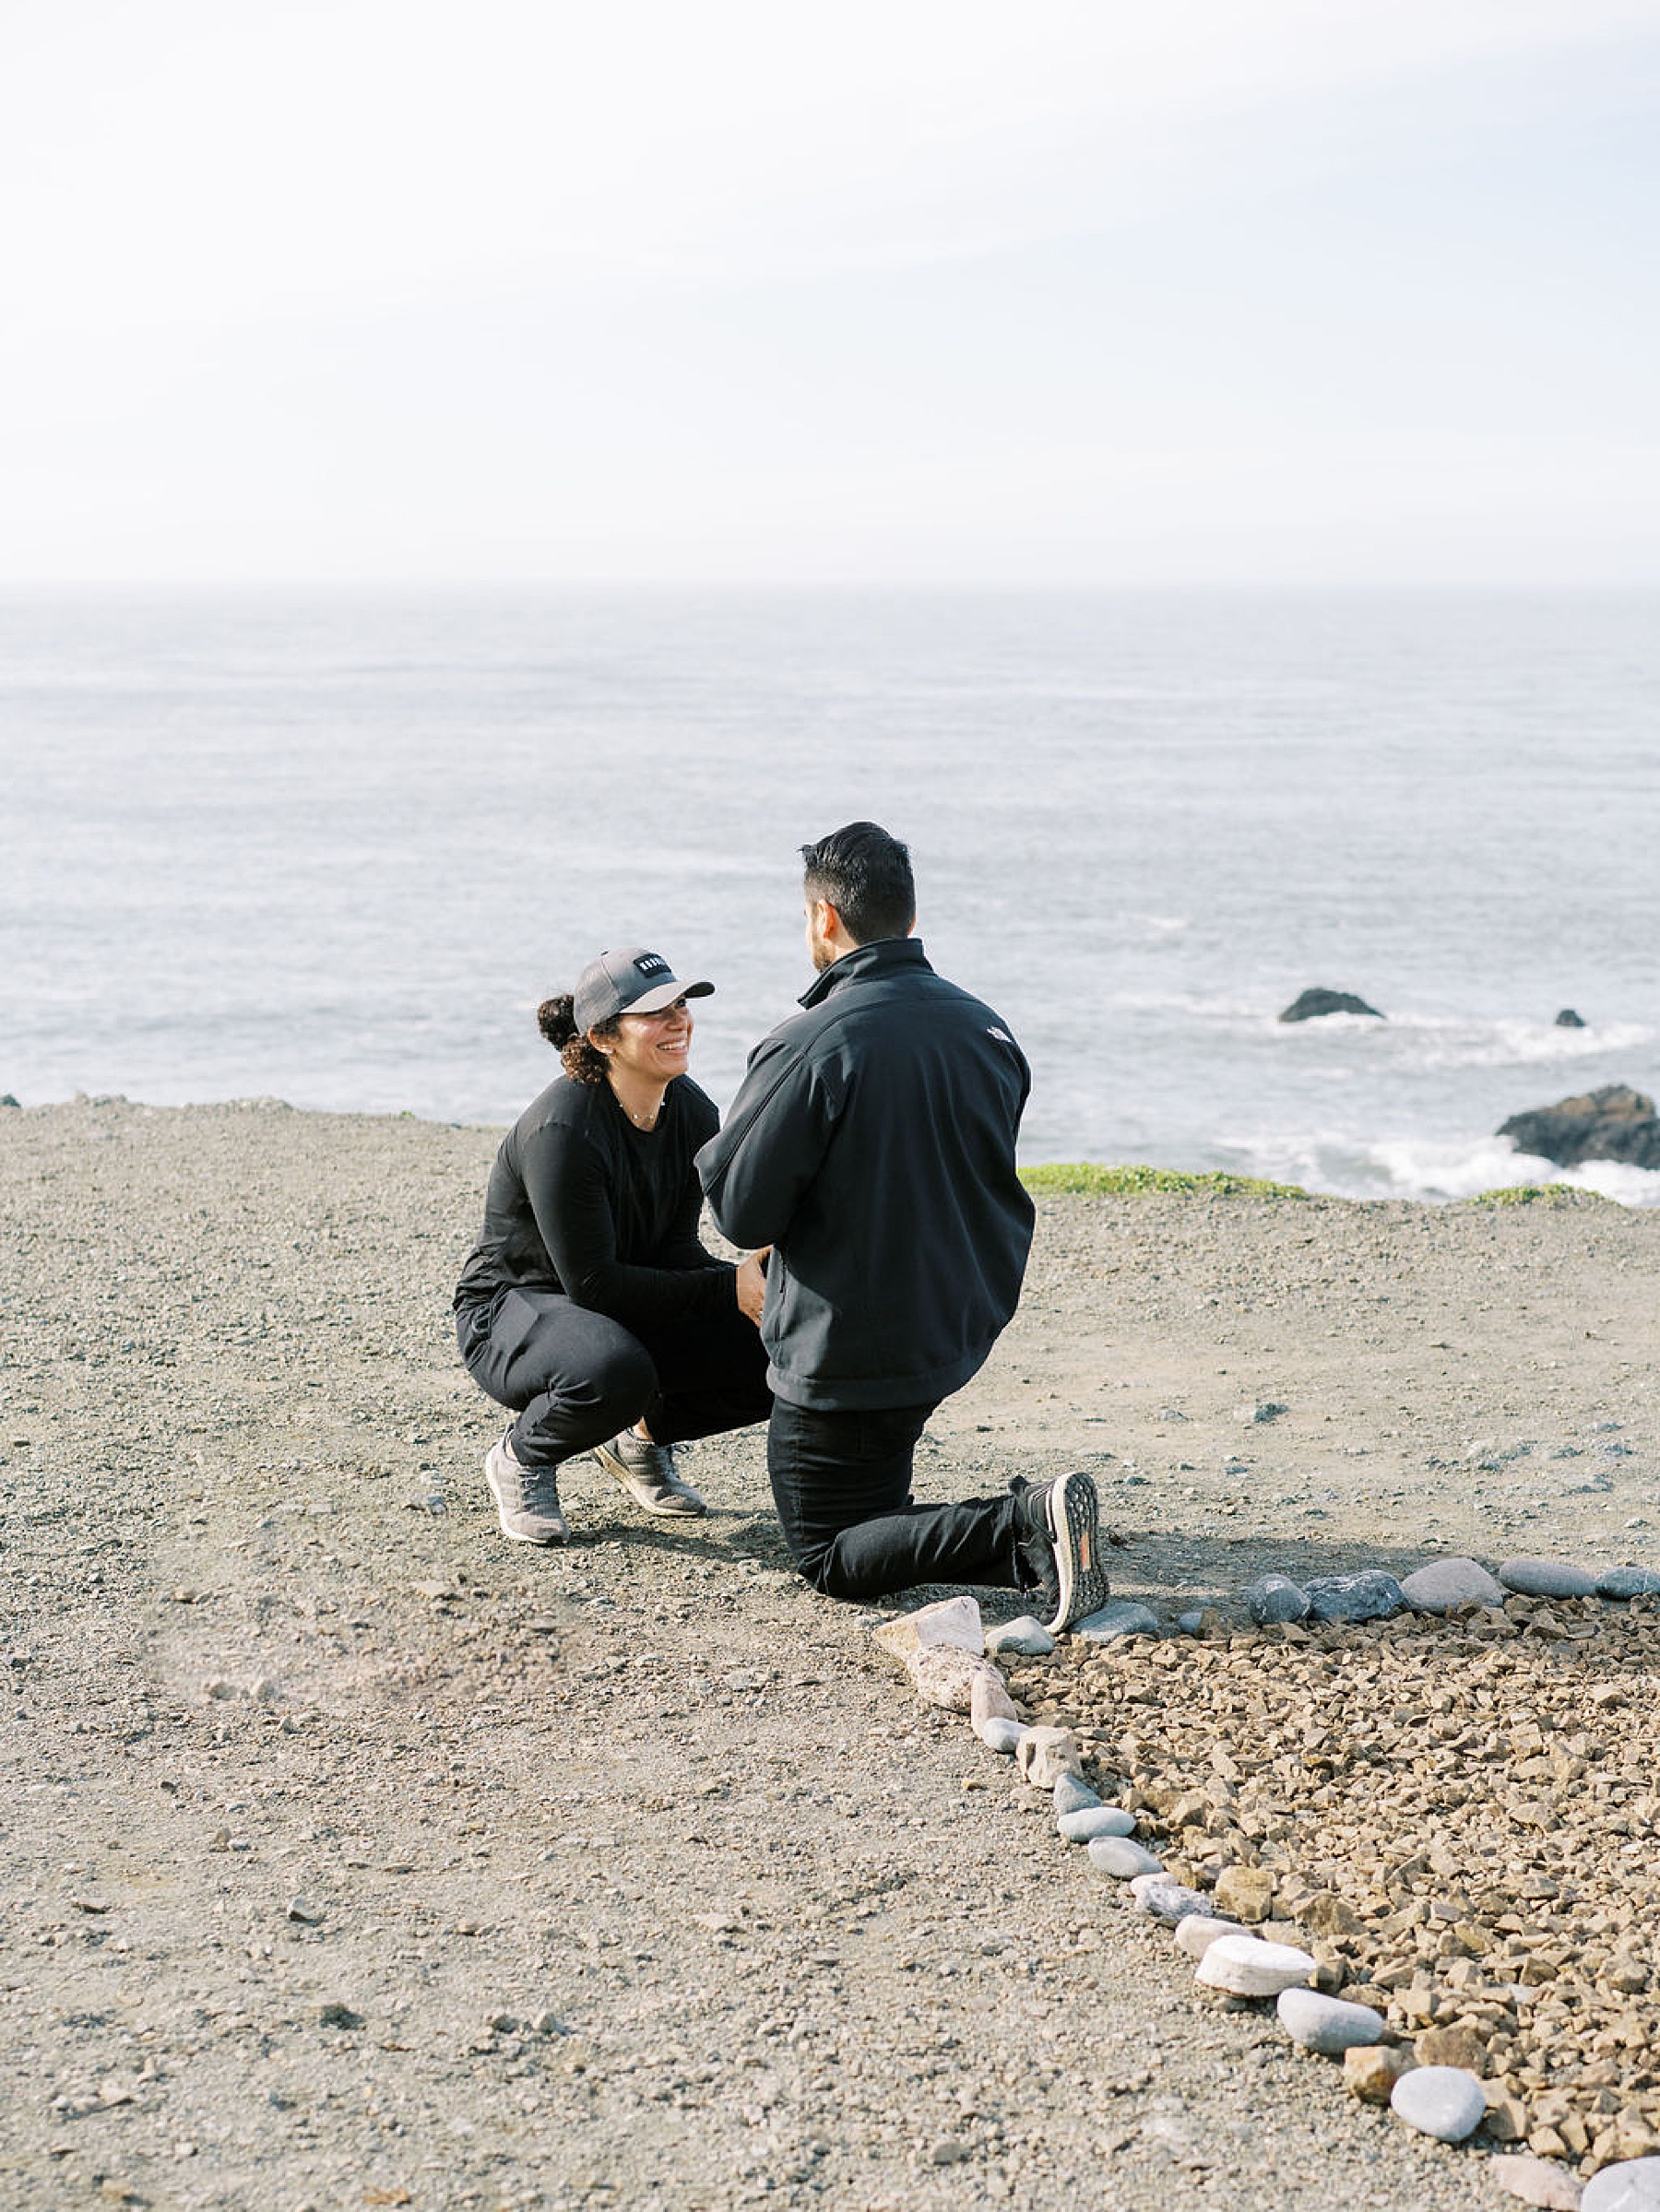 Lands End Proposal - Alex and Veronica - San Francisco Presidio Engagement - Ash Baumgartner_0006.jpg